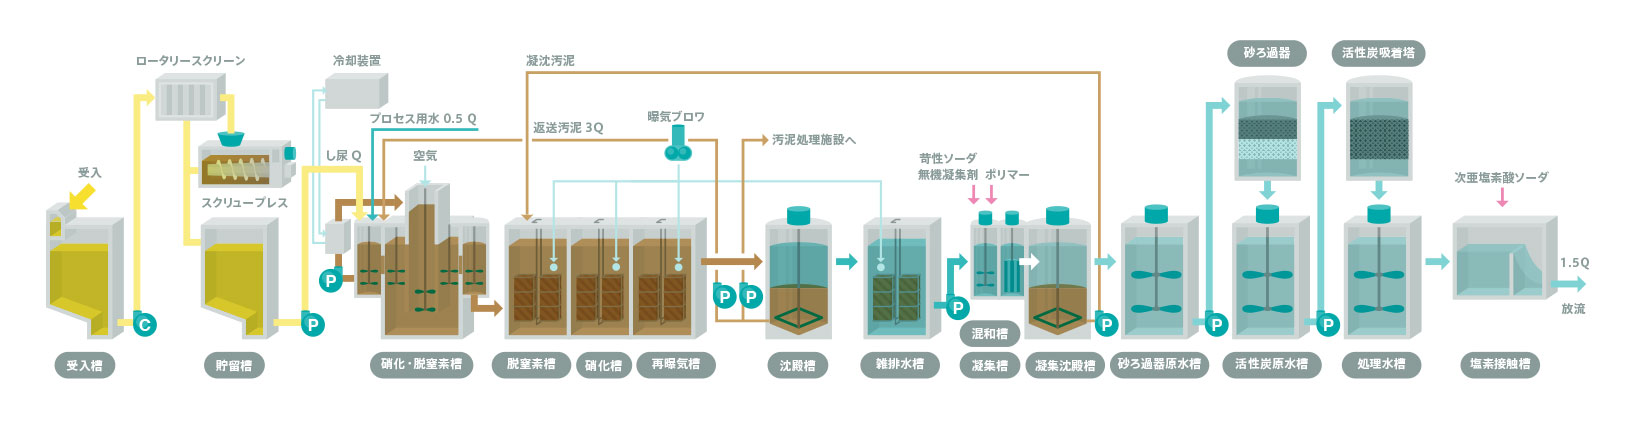 し尿・汚泥再生処理施設/高負荷脱窒素処理方式